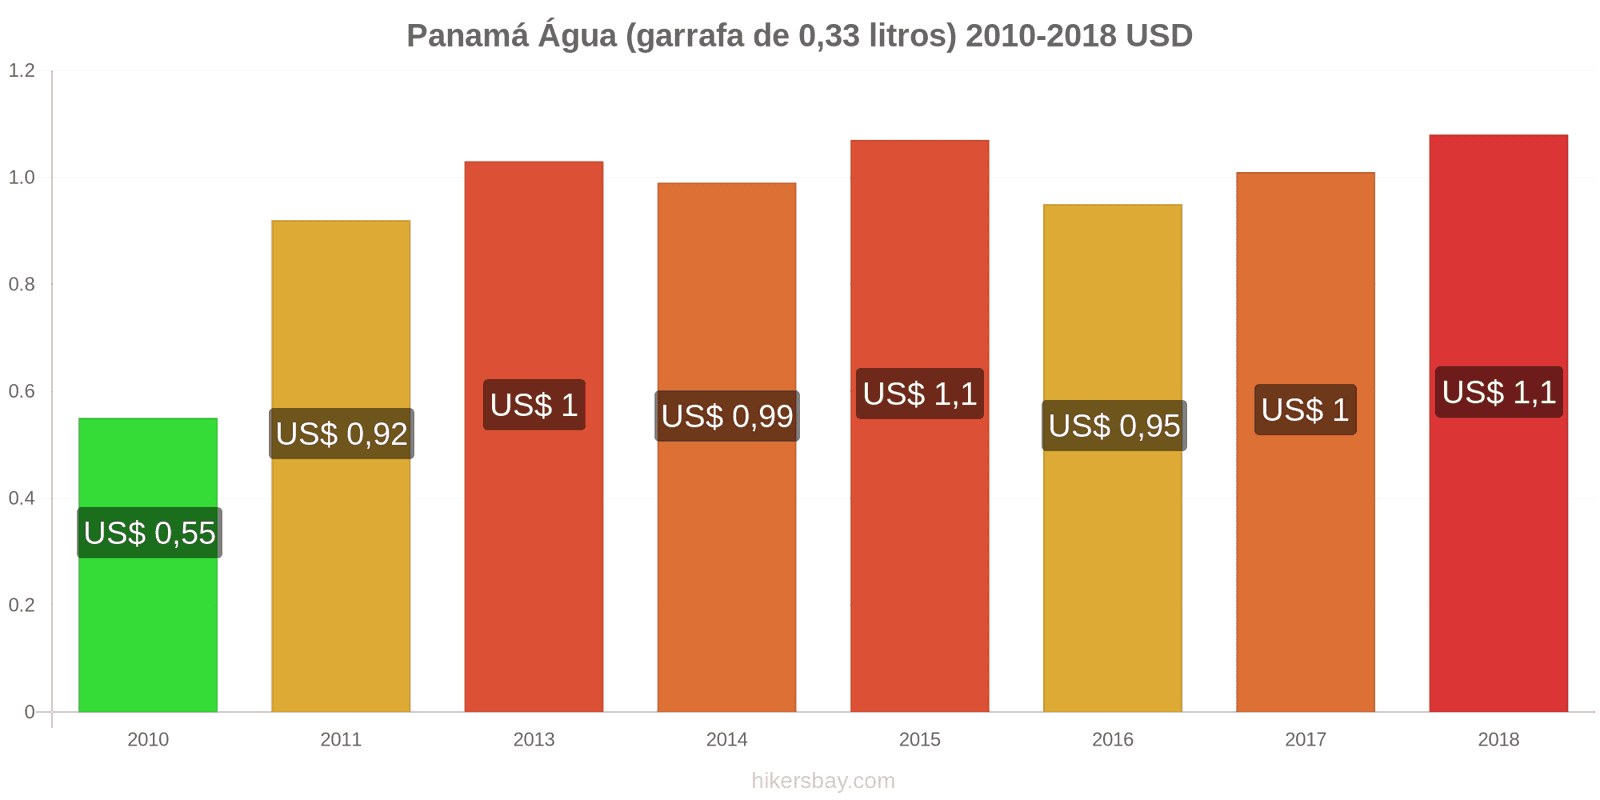 Panamá mudanças de preços Água (garrafa de 0.33 litros) hikersbay.com